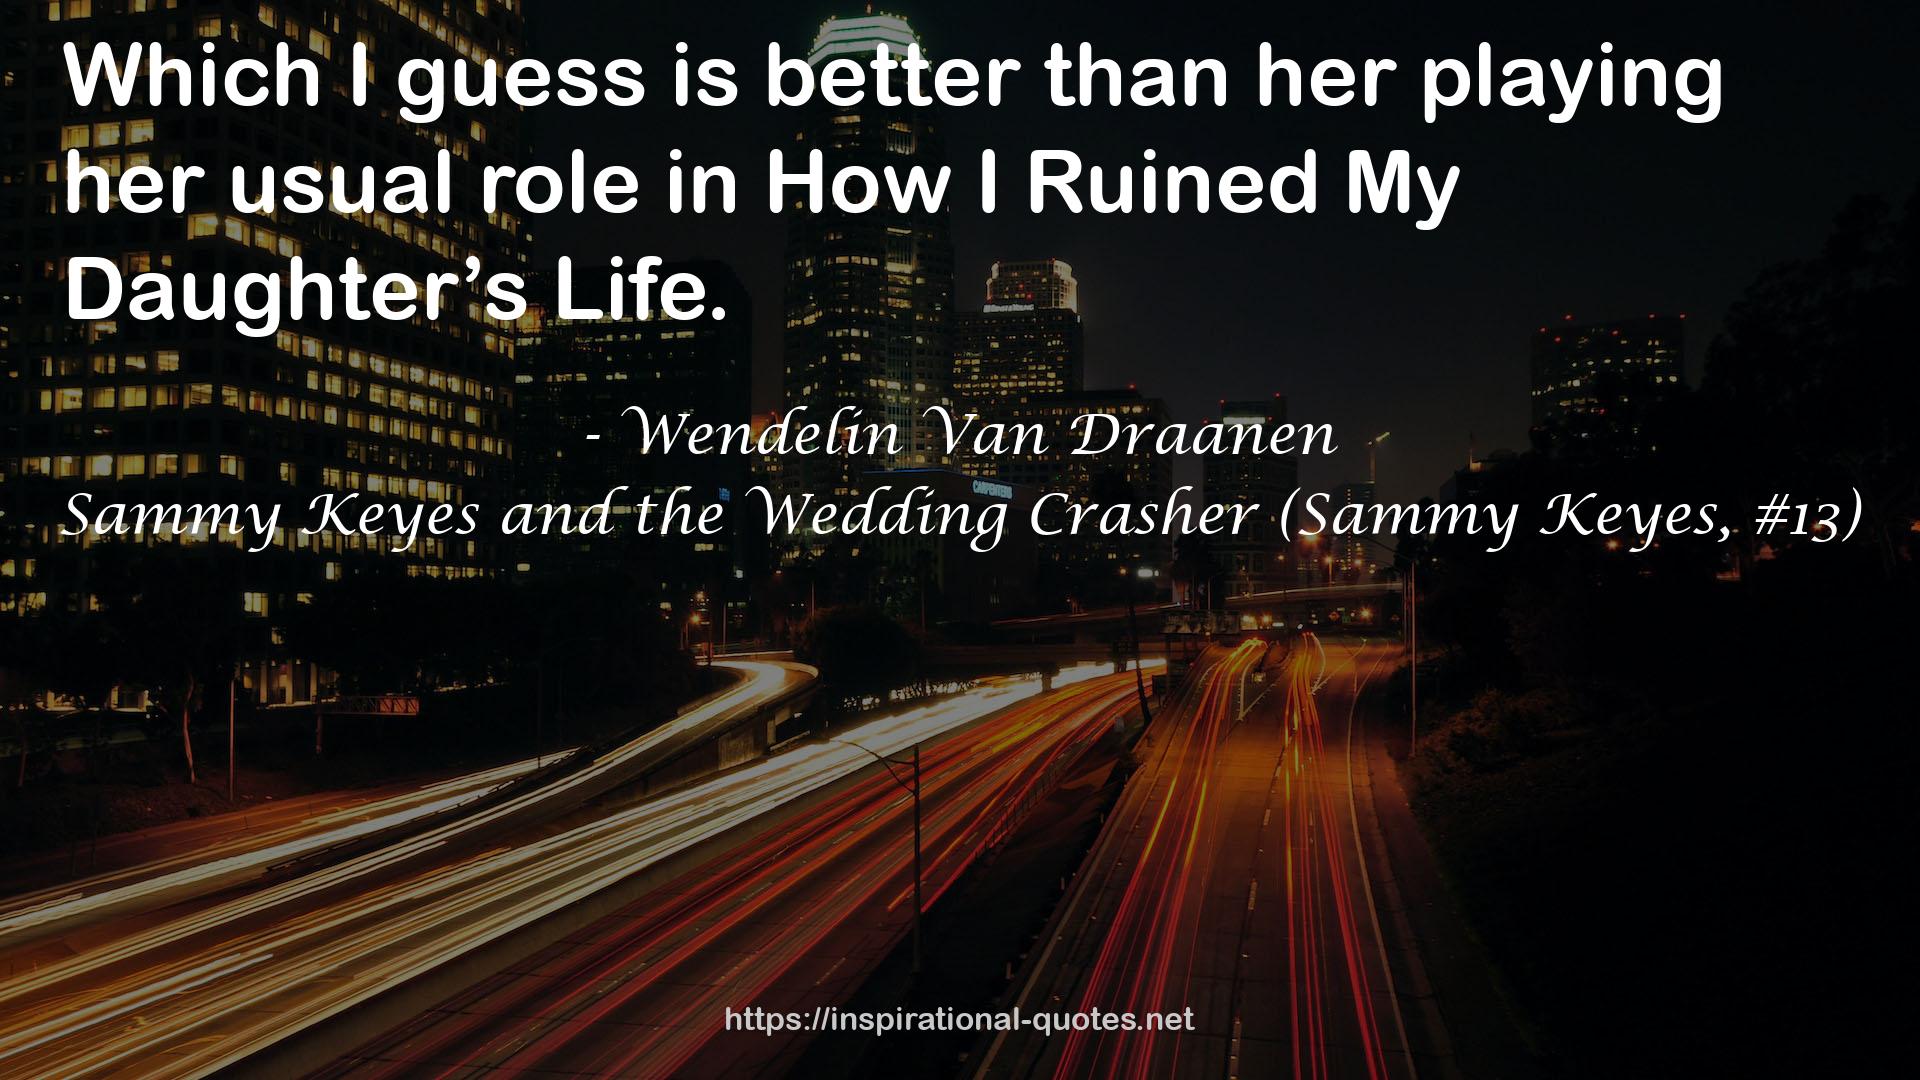 Sammy Keyes and the Wedding Crasher (Sammy Keyes, #13) QUOTES